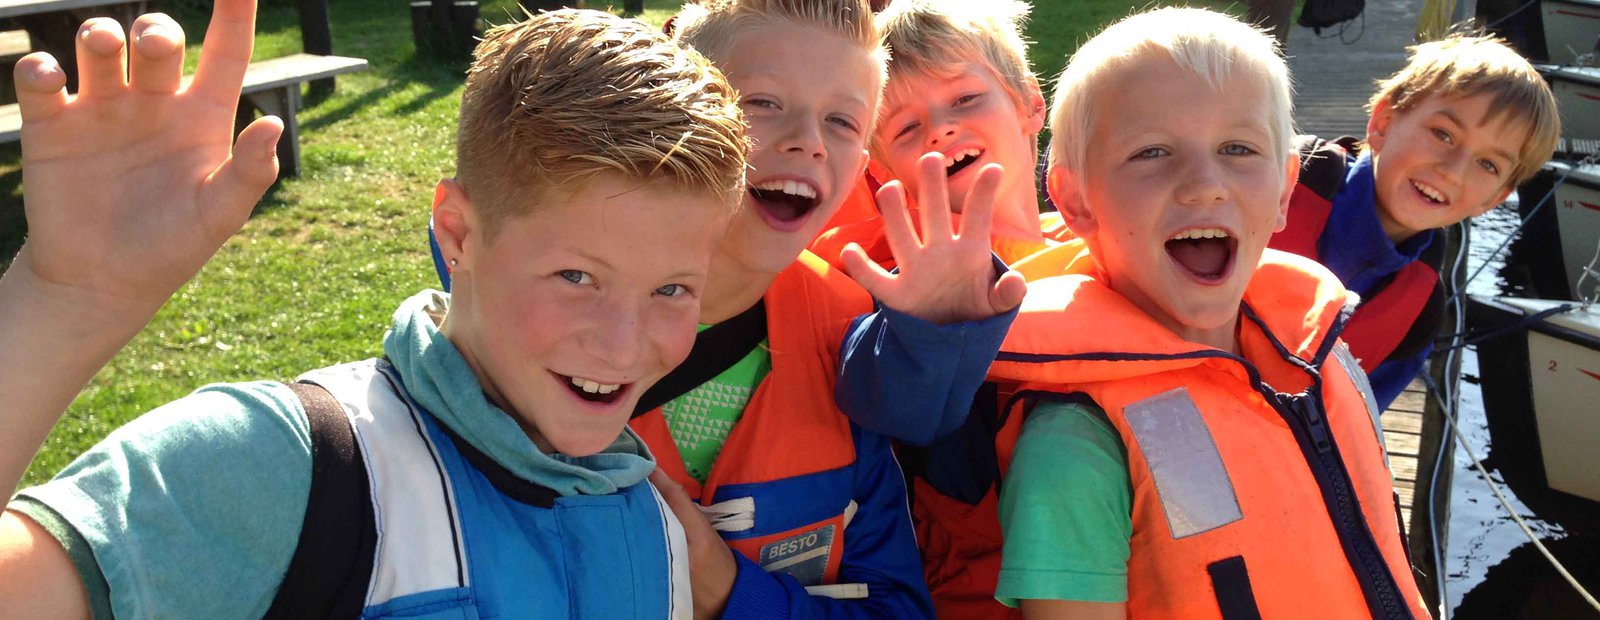 Schoolreis in friesland zeilen in valk en sloepvaren met kinderen